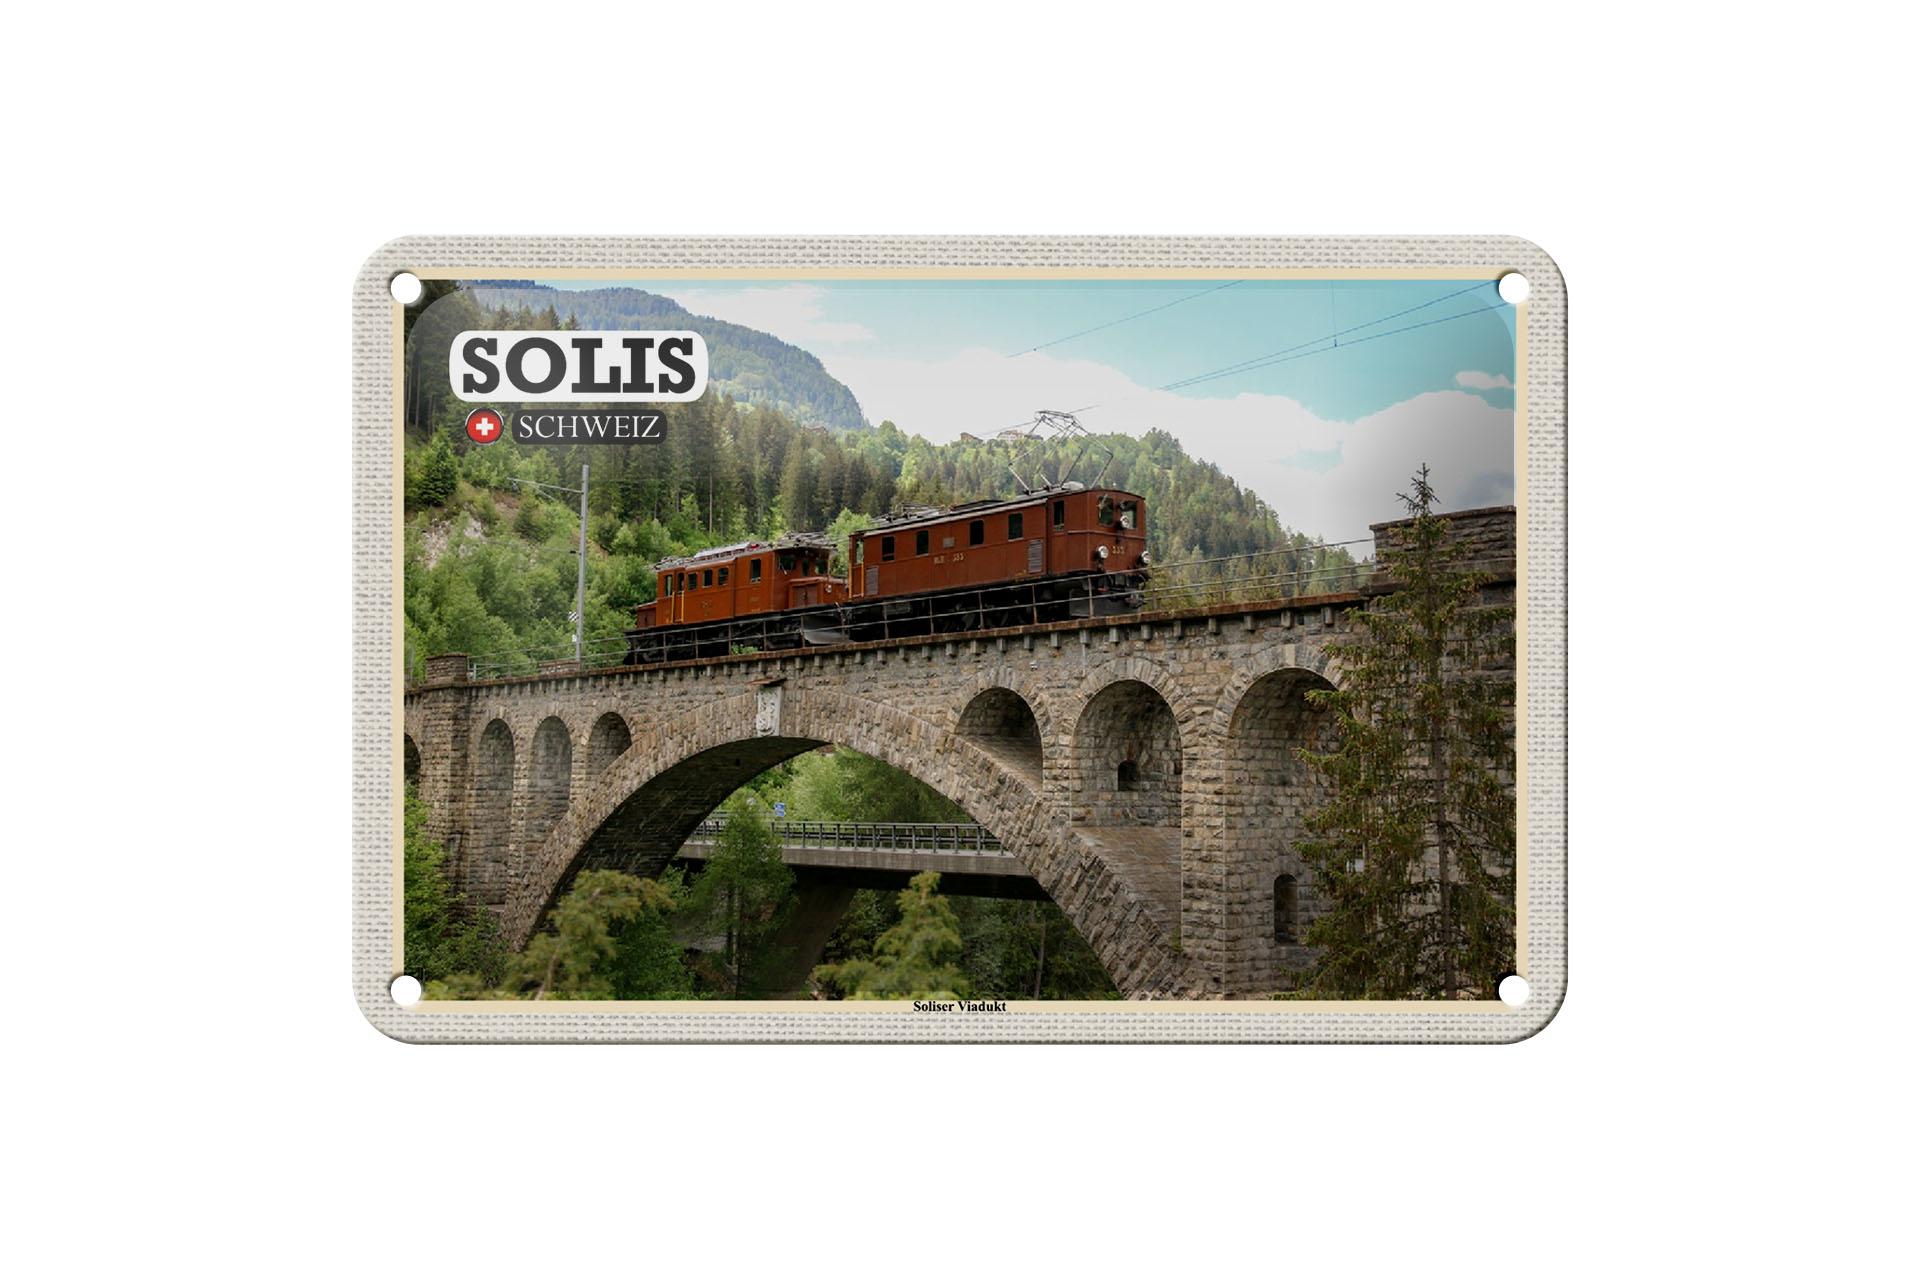 Blechschild Reise Solis Schweiz Soliser Viadukt Brücke 18x12 cm Schild